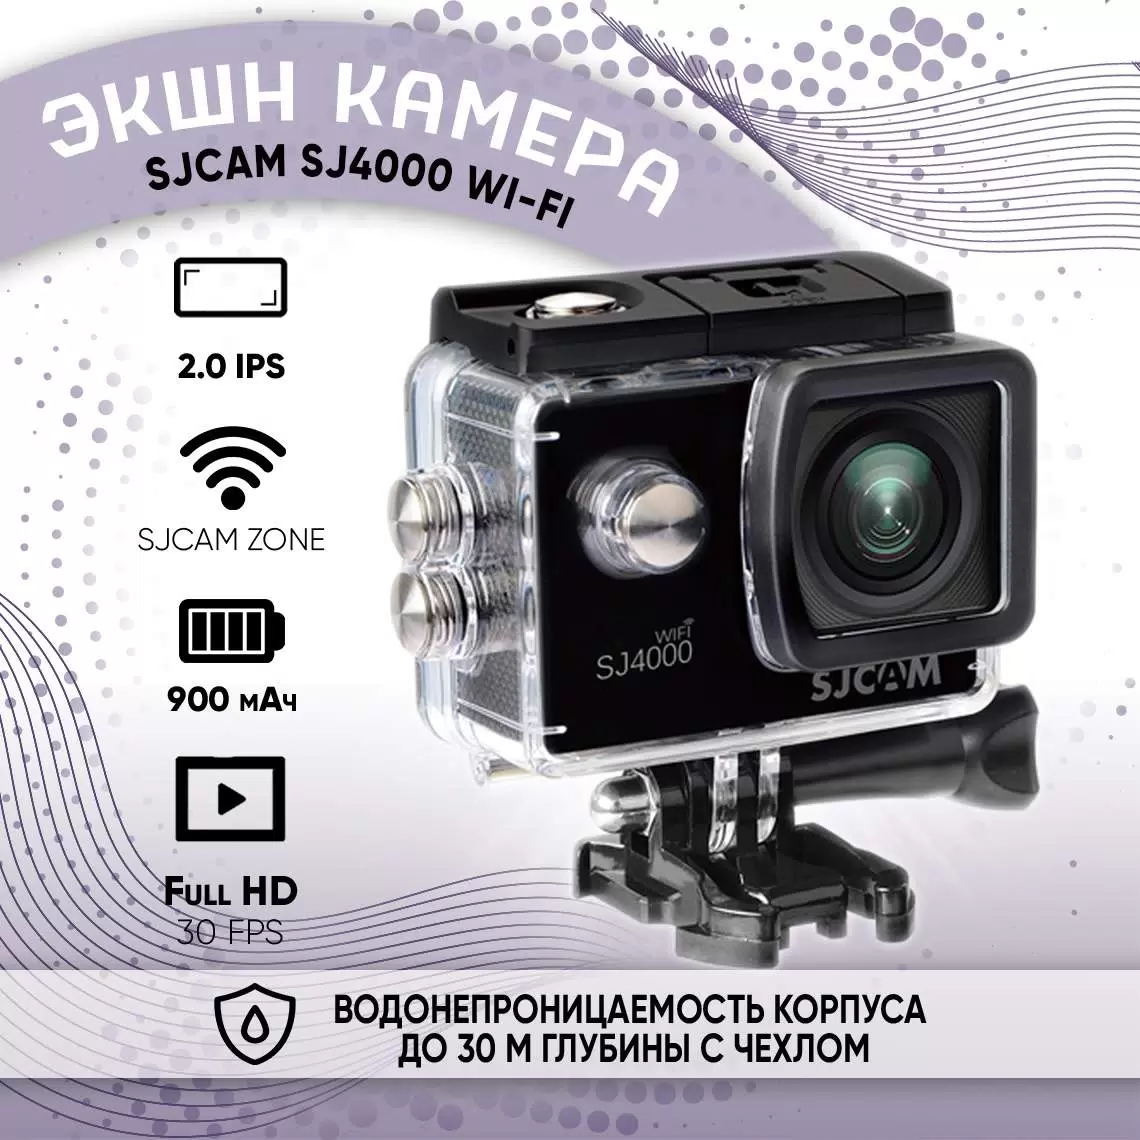 Экшн камера с креплением на шлем, голову, грудь 4k SJCAM SJ4000 WiFi, черный - VLARNIKA в Донецке